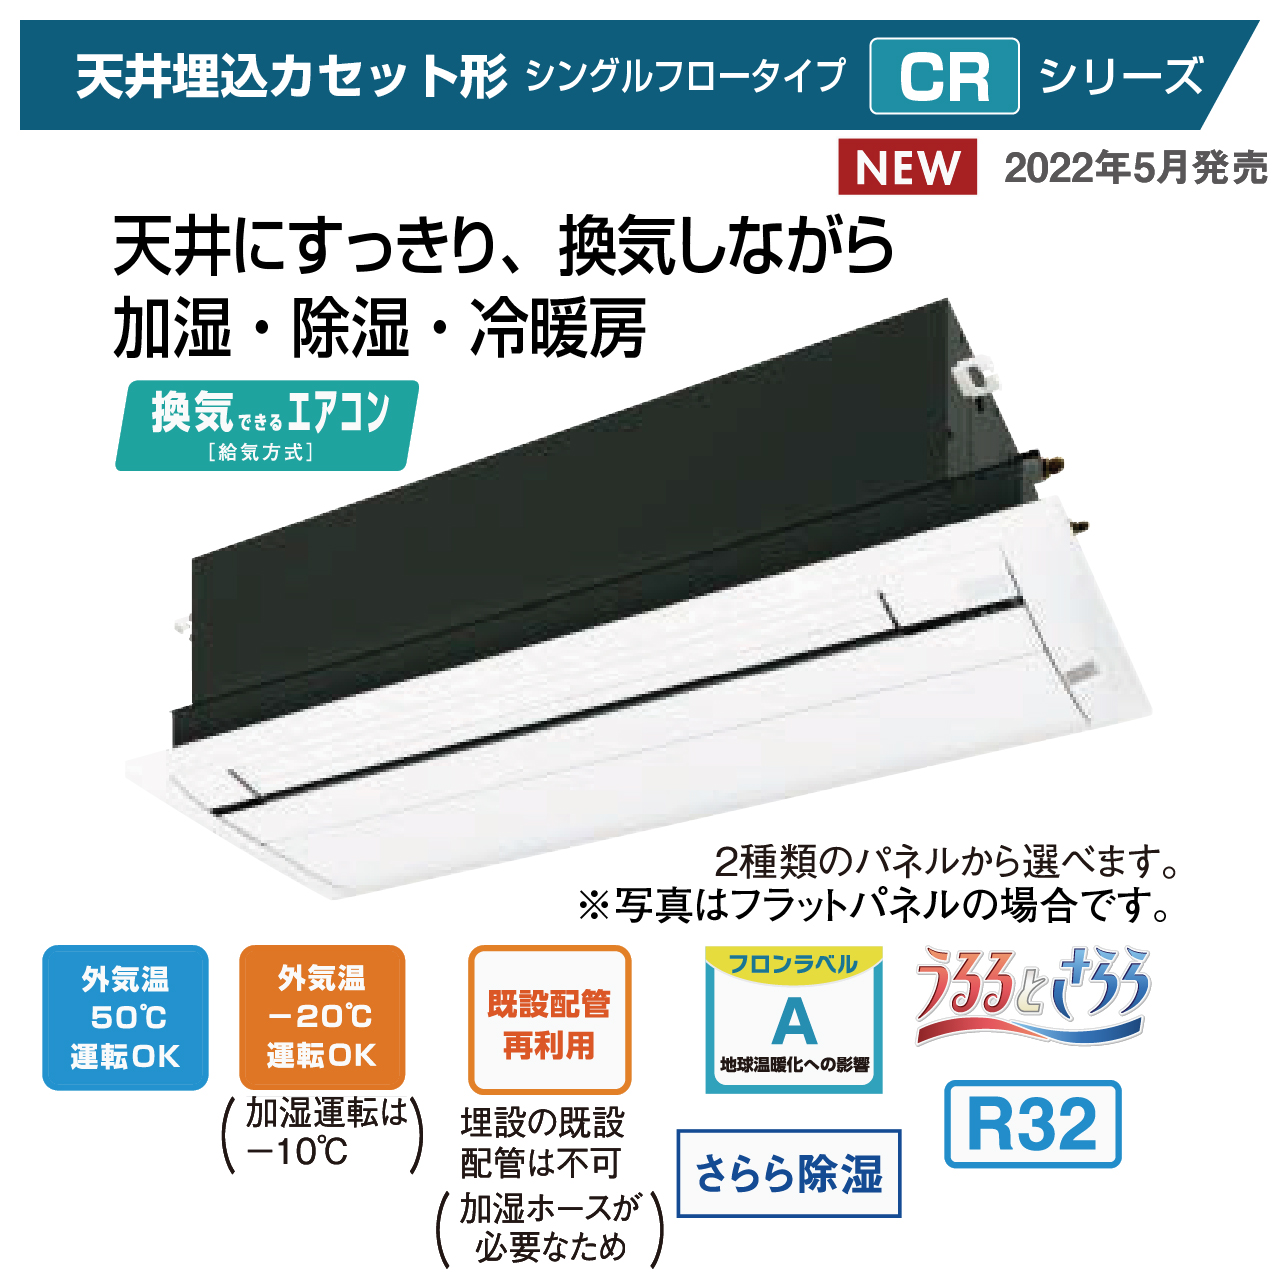 ダイキン天井埋込カセット形エアコン CRシリーズ